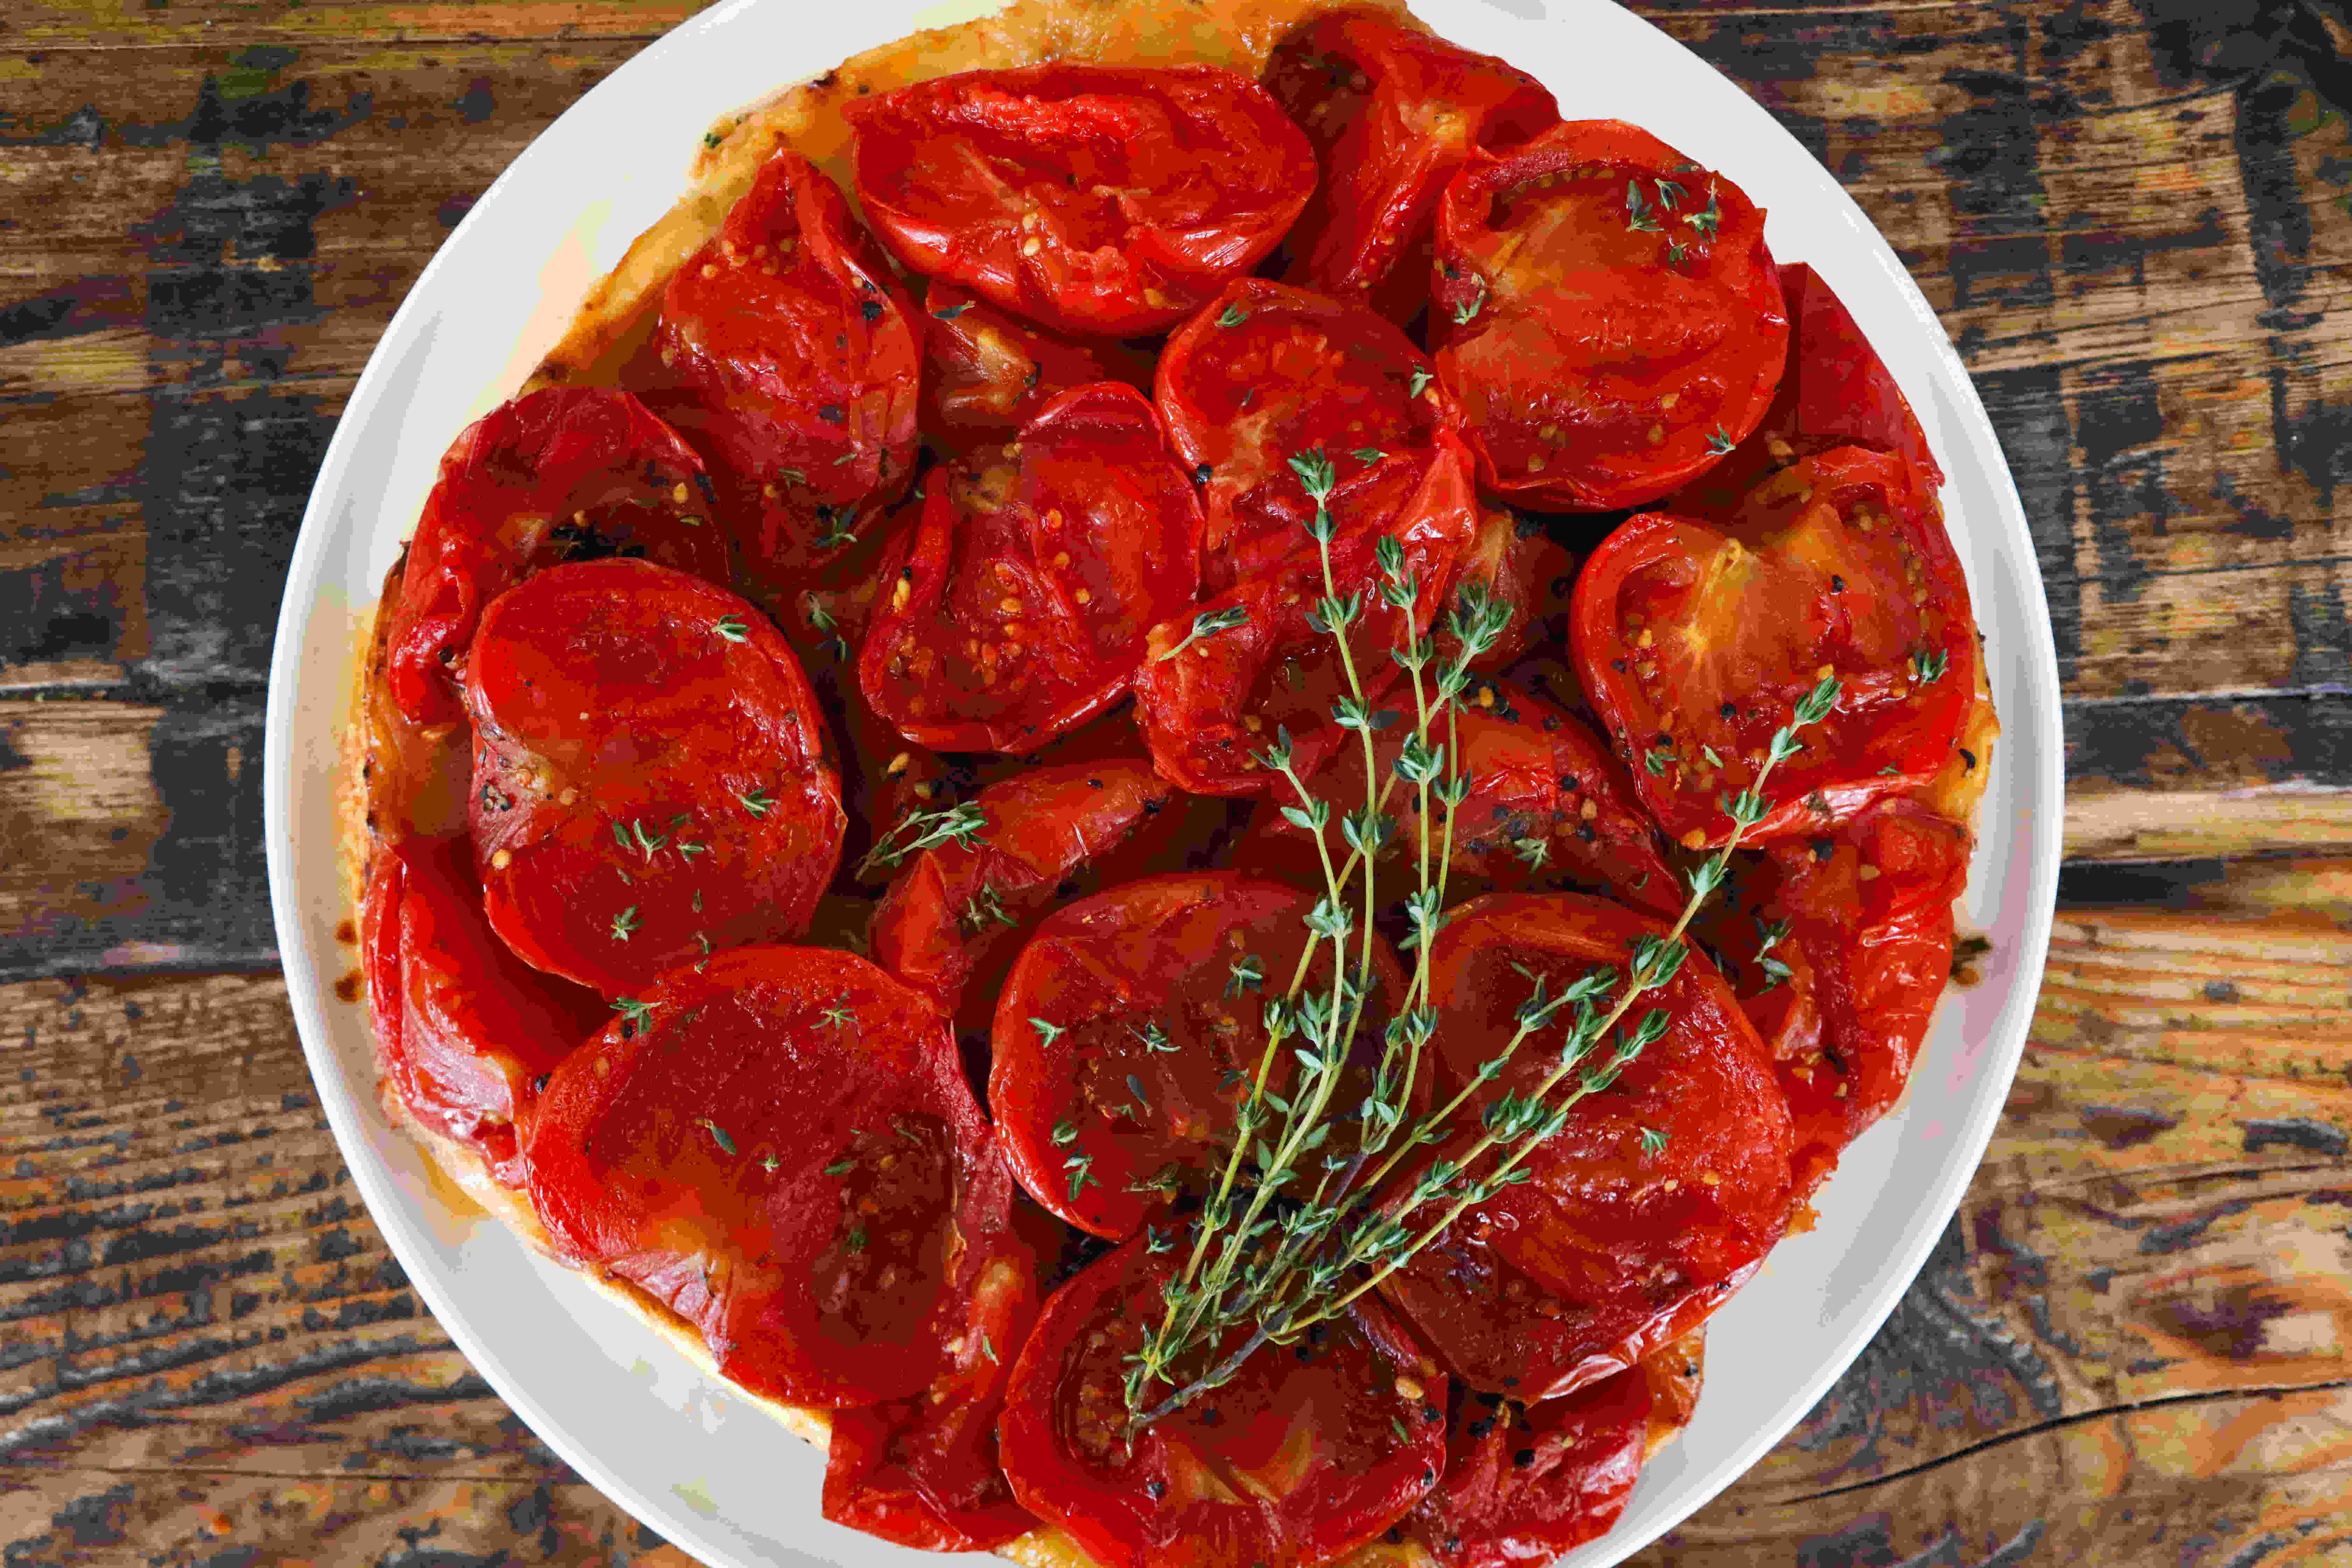 Tomato Tarte Tatin